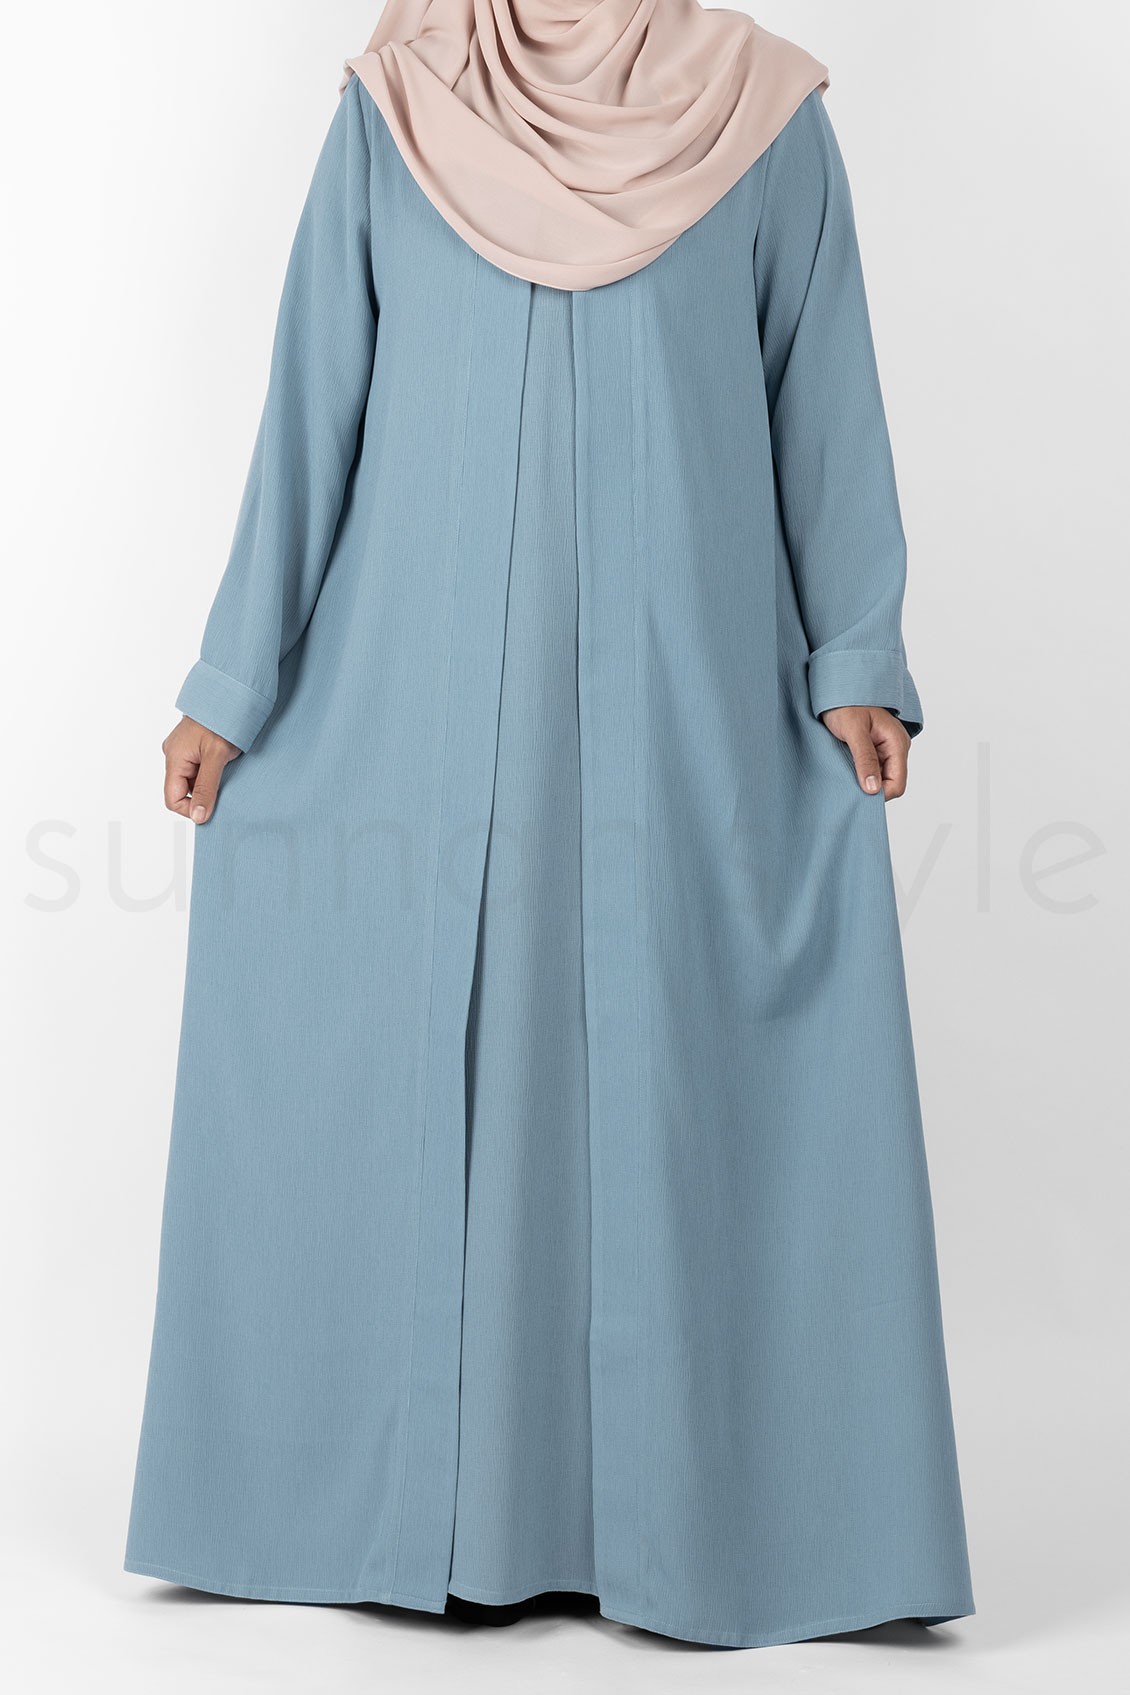 Sunnah Style Brushed Sleeveless Abaya Sky Blue